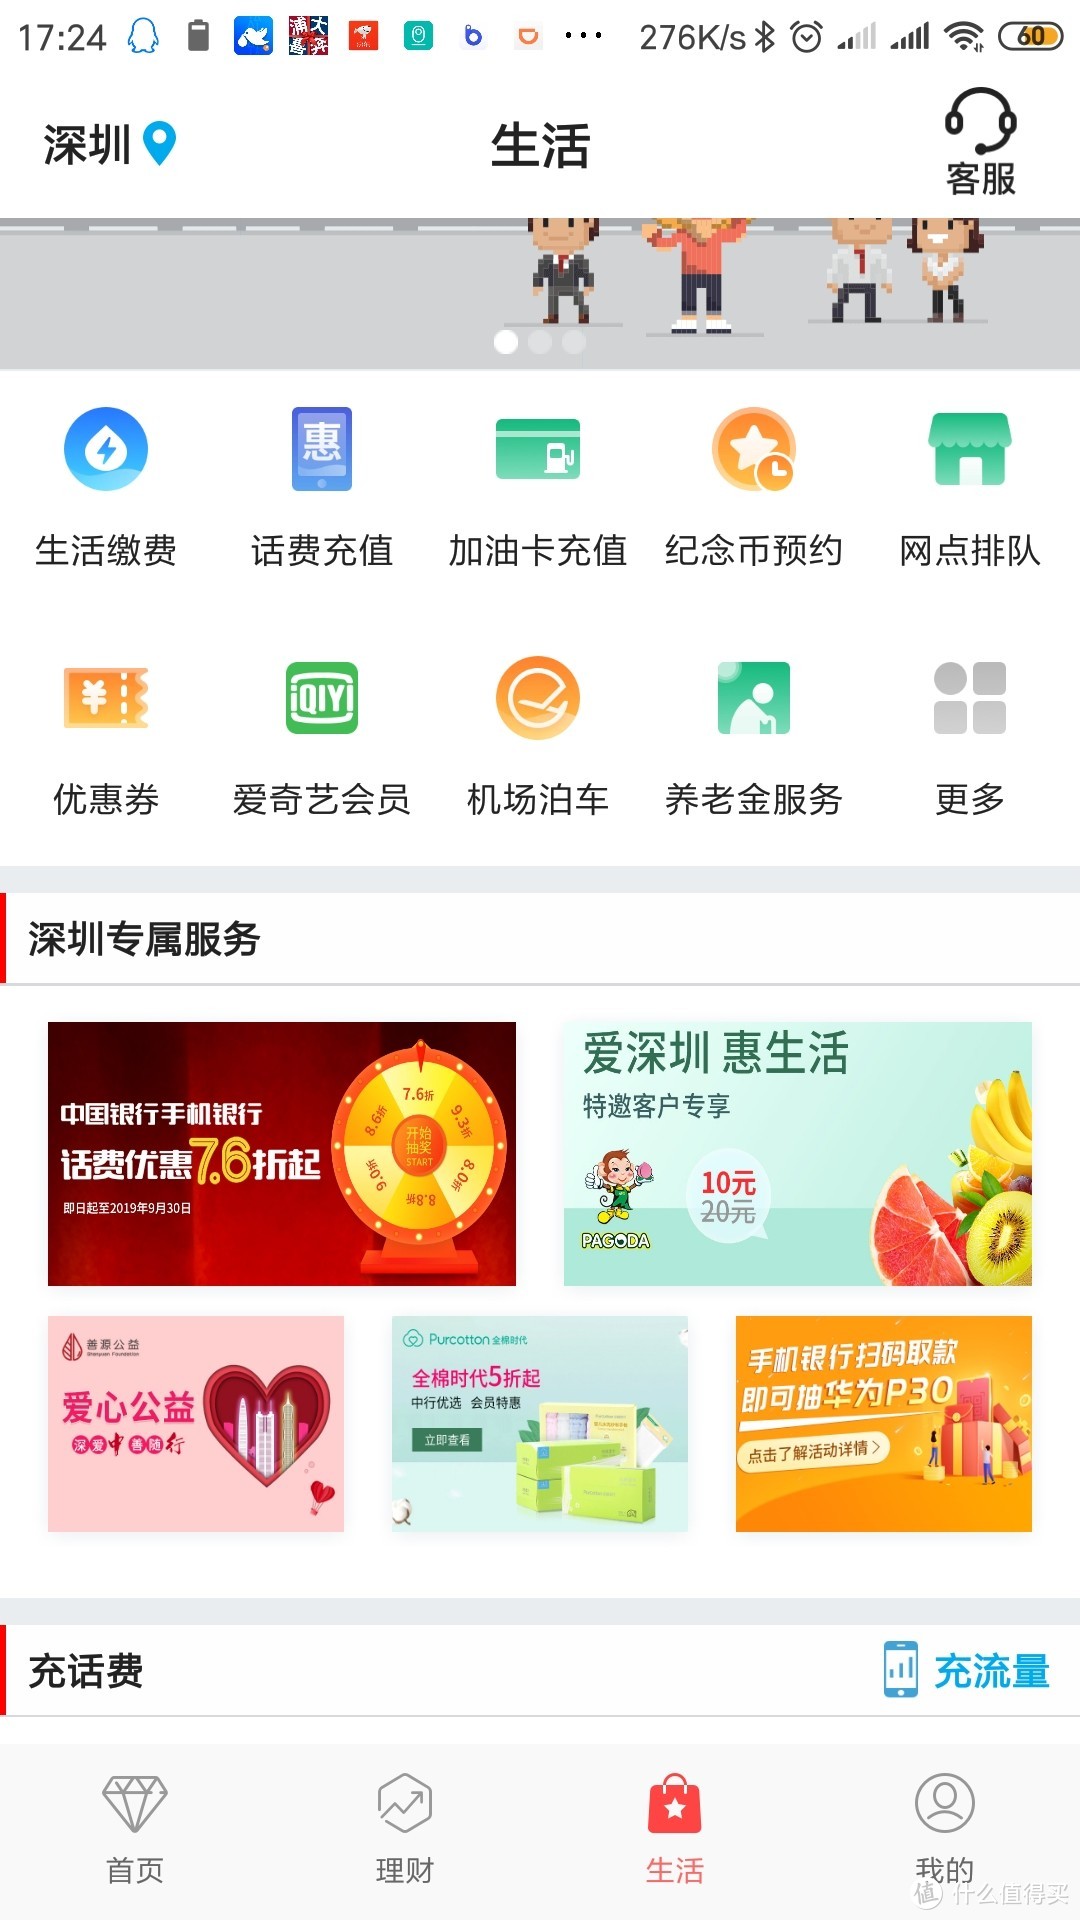 中国银行手机APP充话费可享7.6-9.3折（深圳可参与）